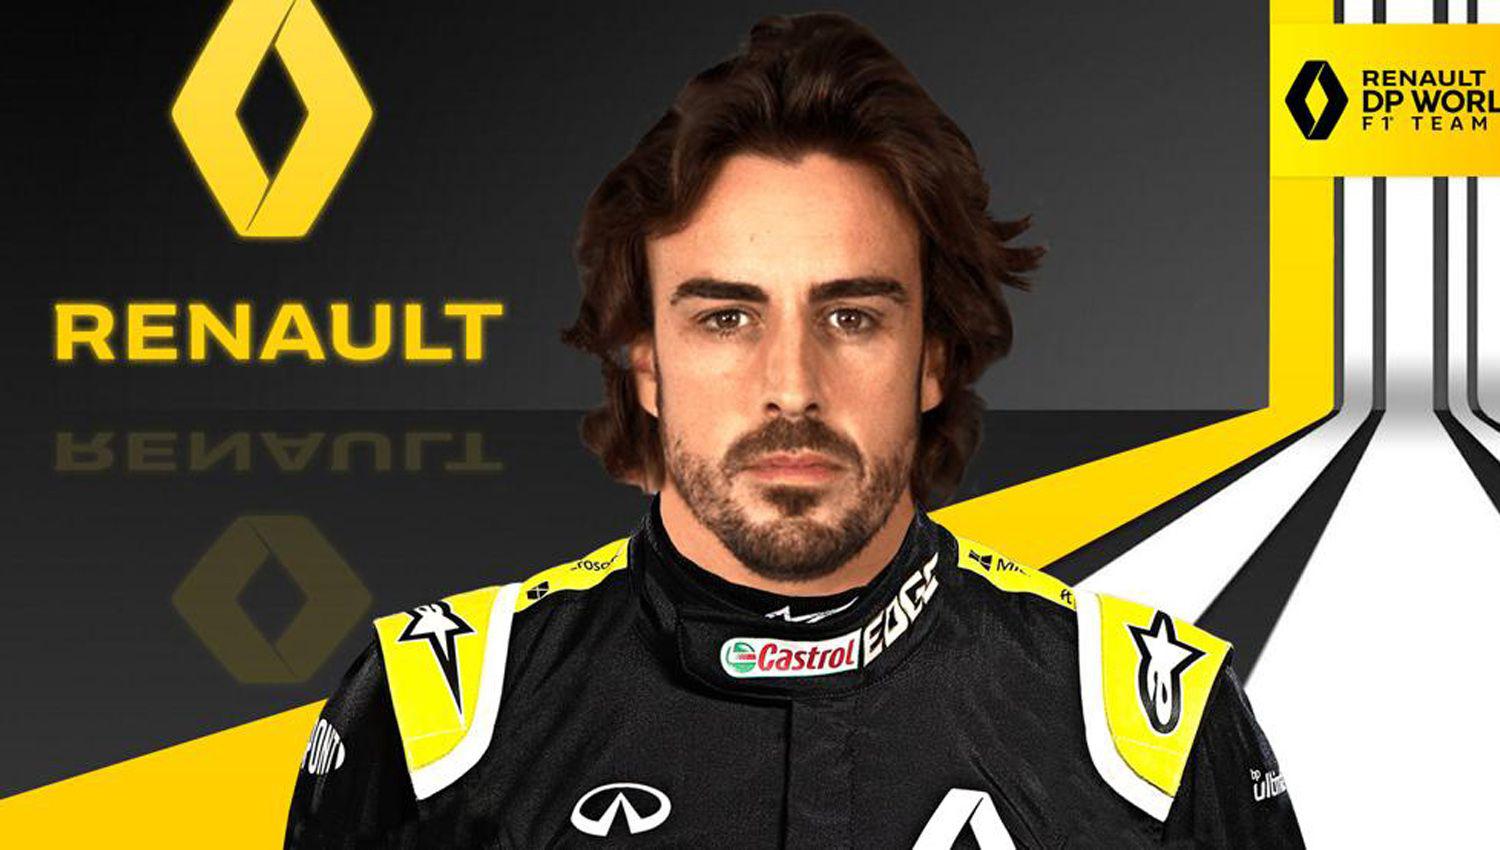 El espantildeol Fernando Alonso volveraacute a la Foacutermula 1 en el 2021